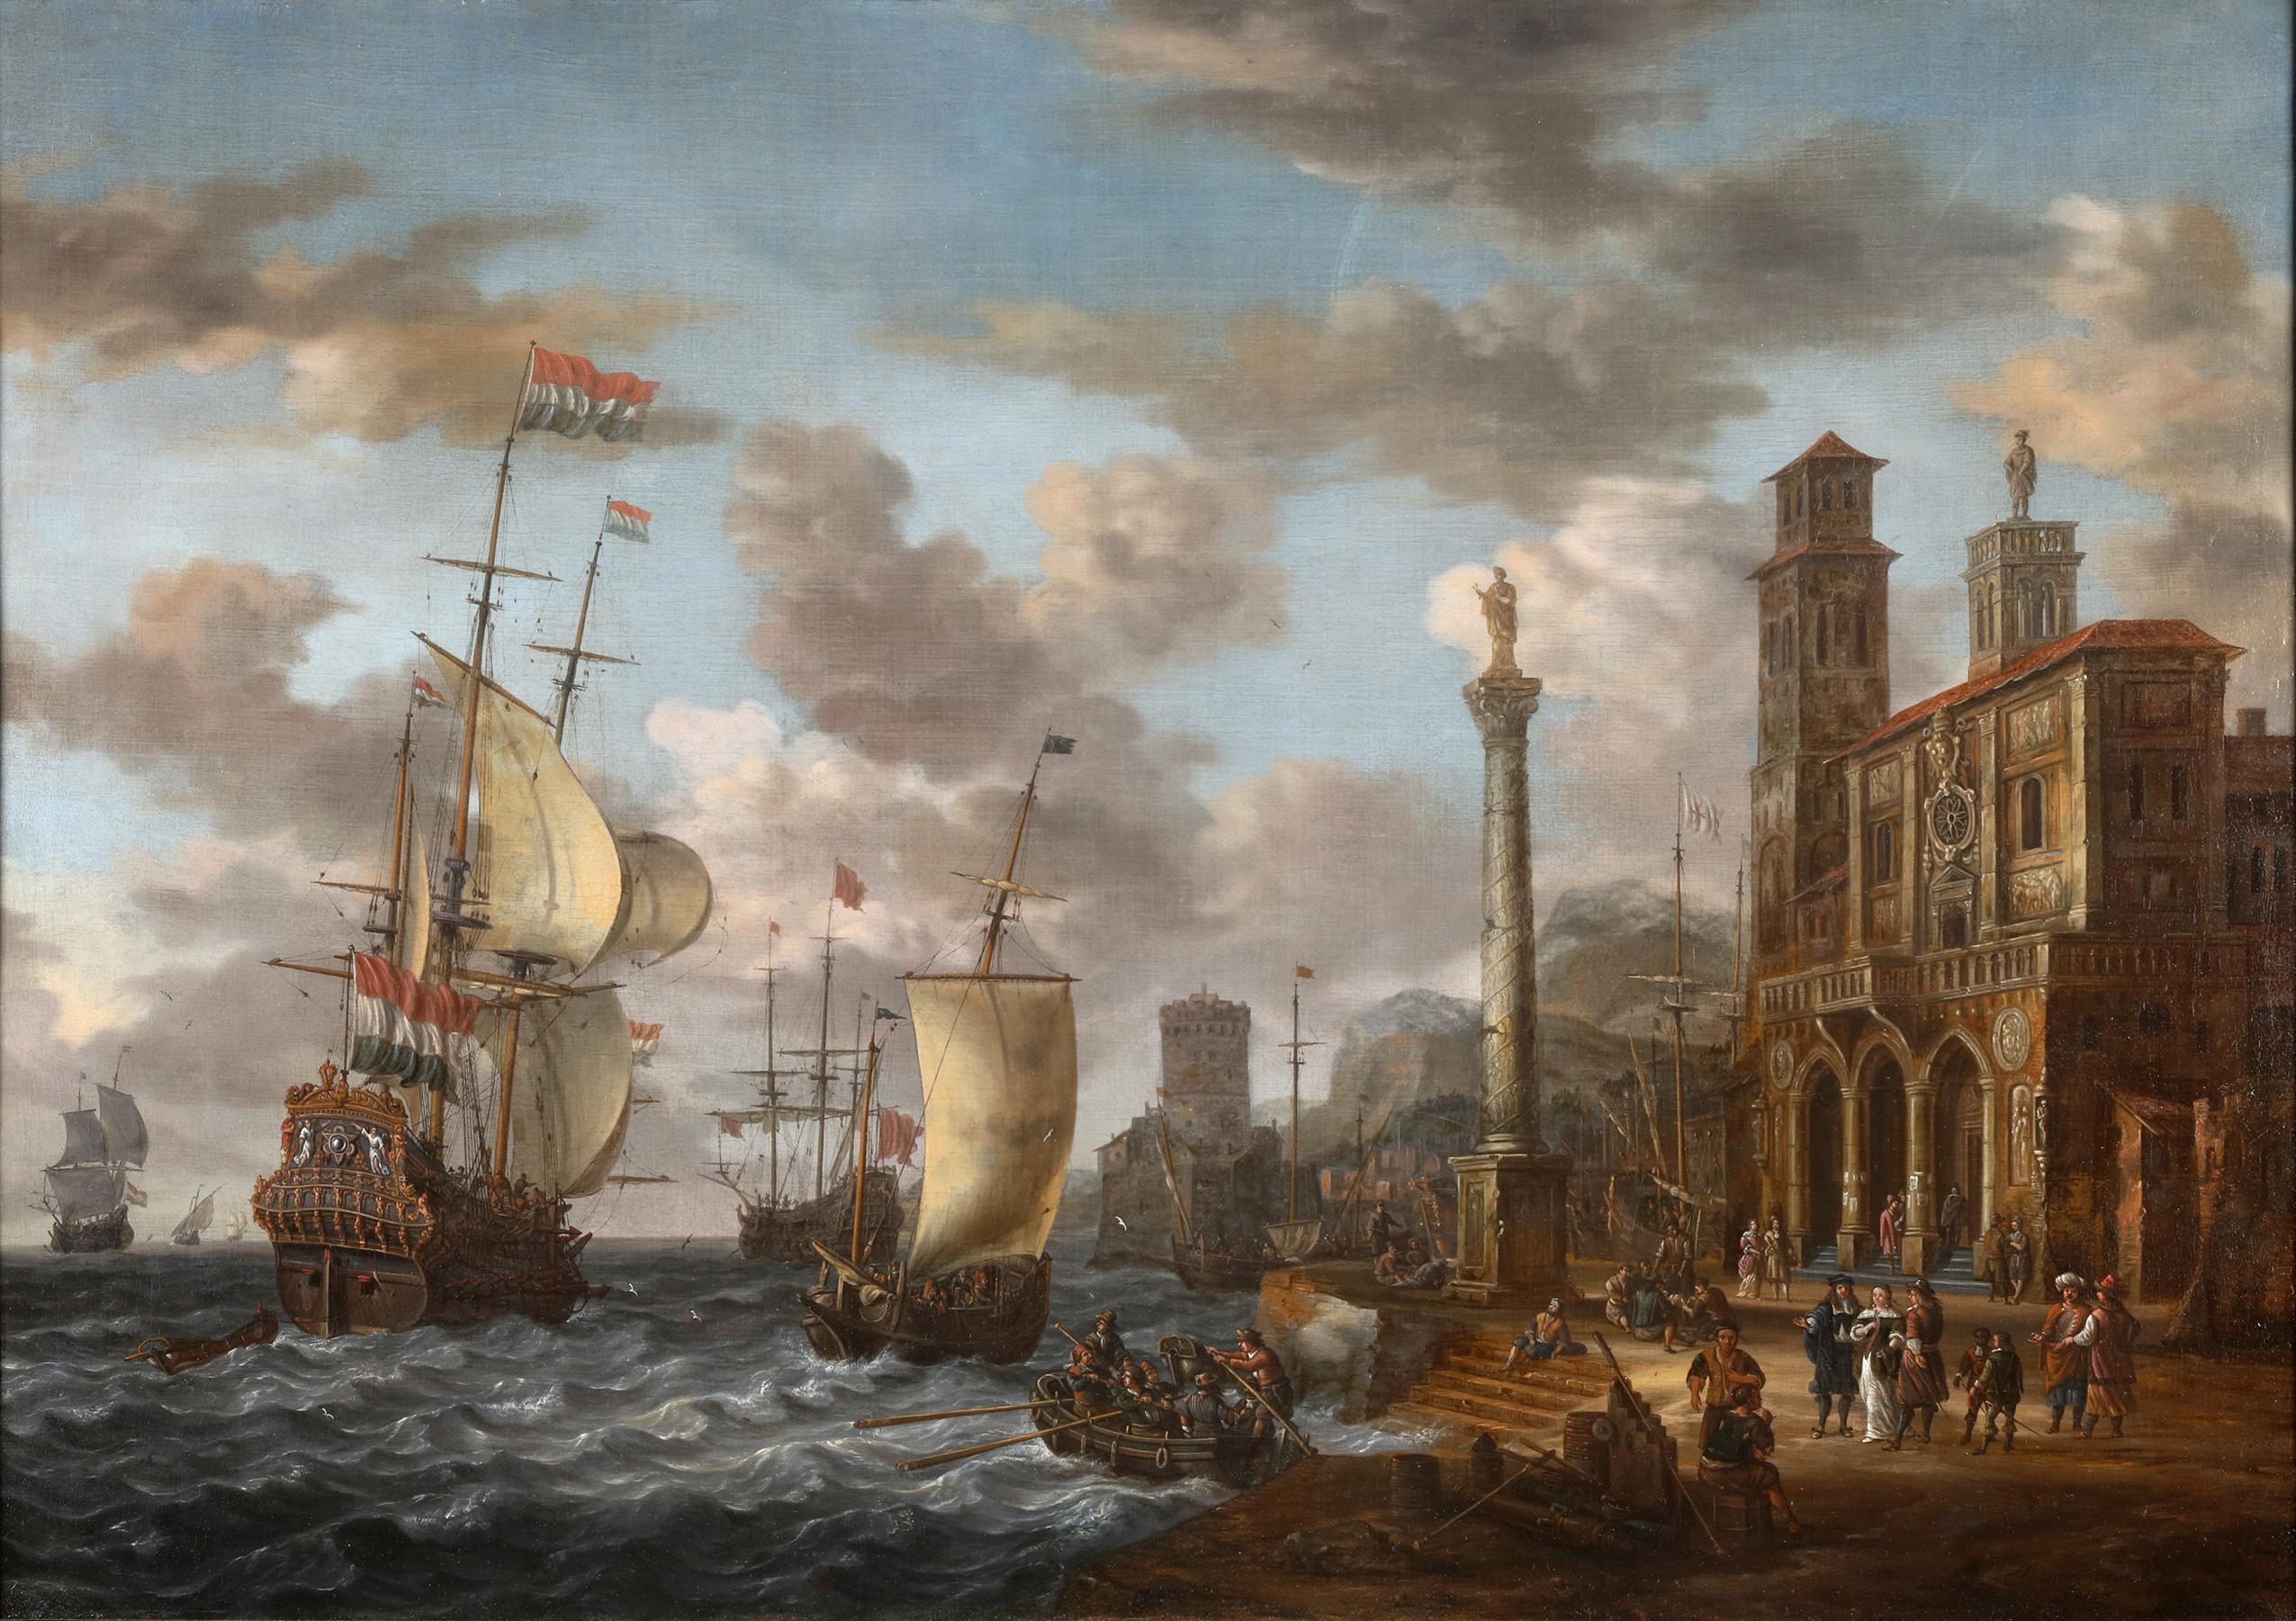 Huile sur toile
 Signé en bas à droite : "Johannes van Sturckenburgh".

L'œuvre de Johannes Sturckenburgh intitulée "View of an Animated Italiante harbour" (Vue d'un port italien animé) transporte les spectateurs dans une scène pittoresque et animée